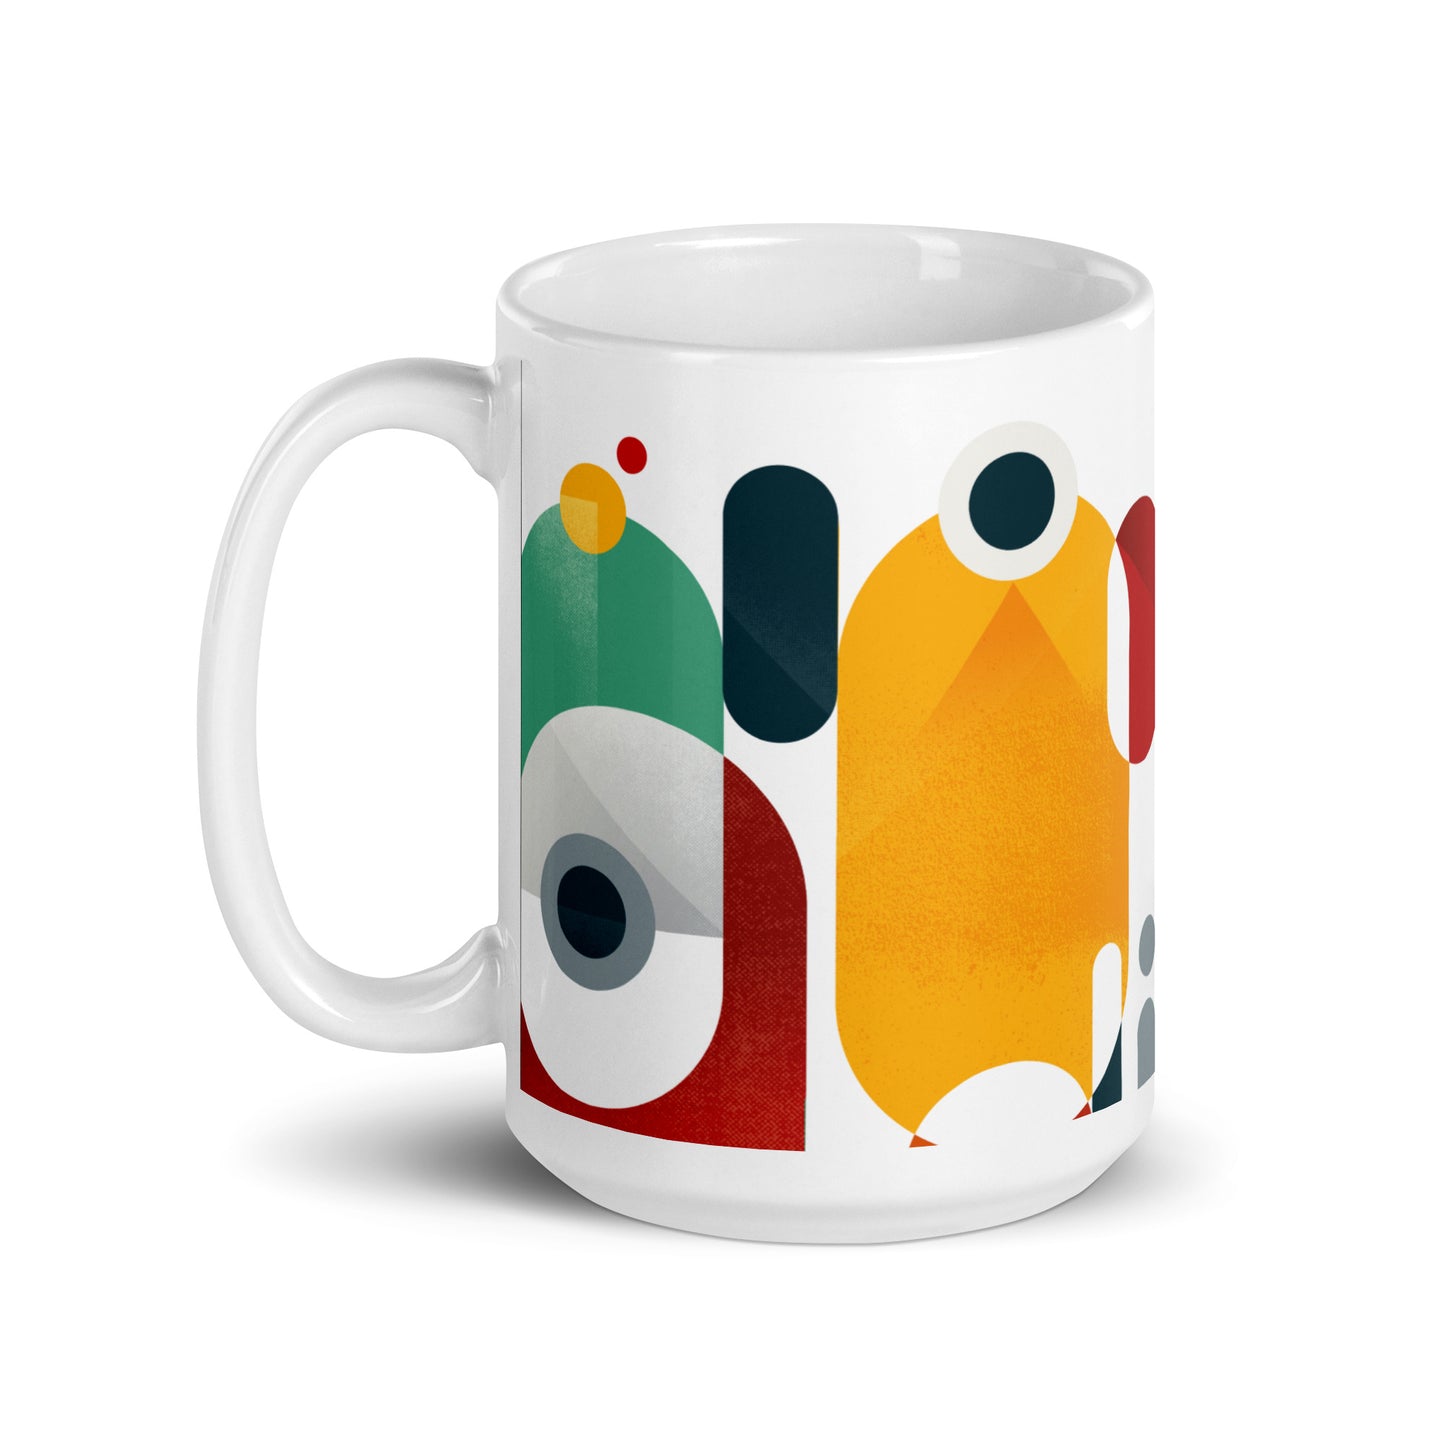 Abstract mug